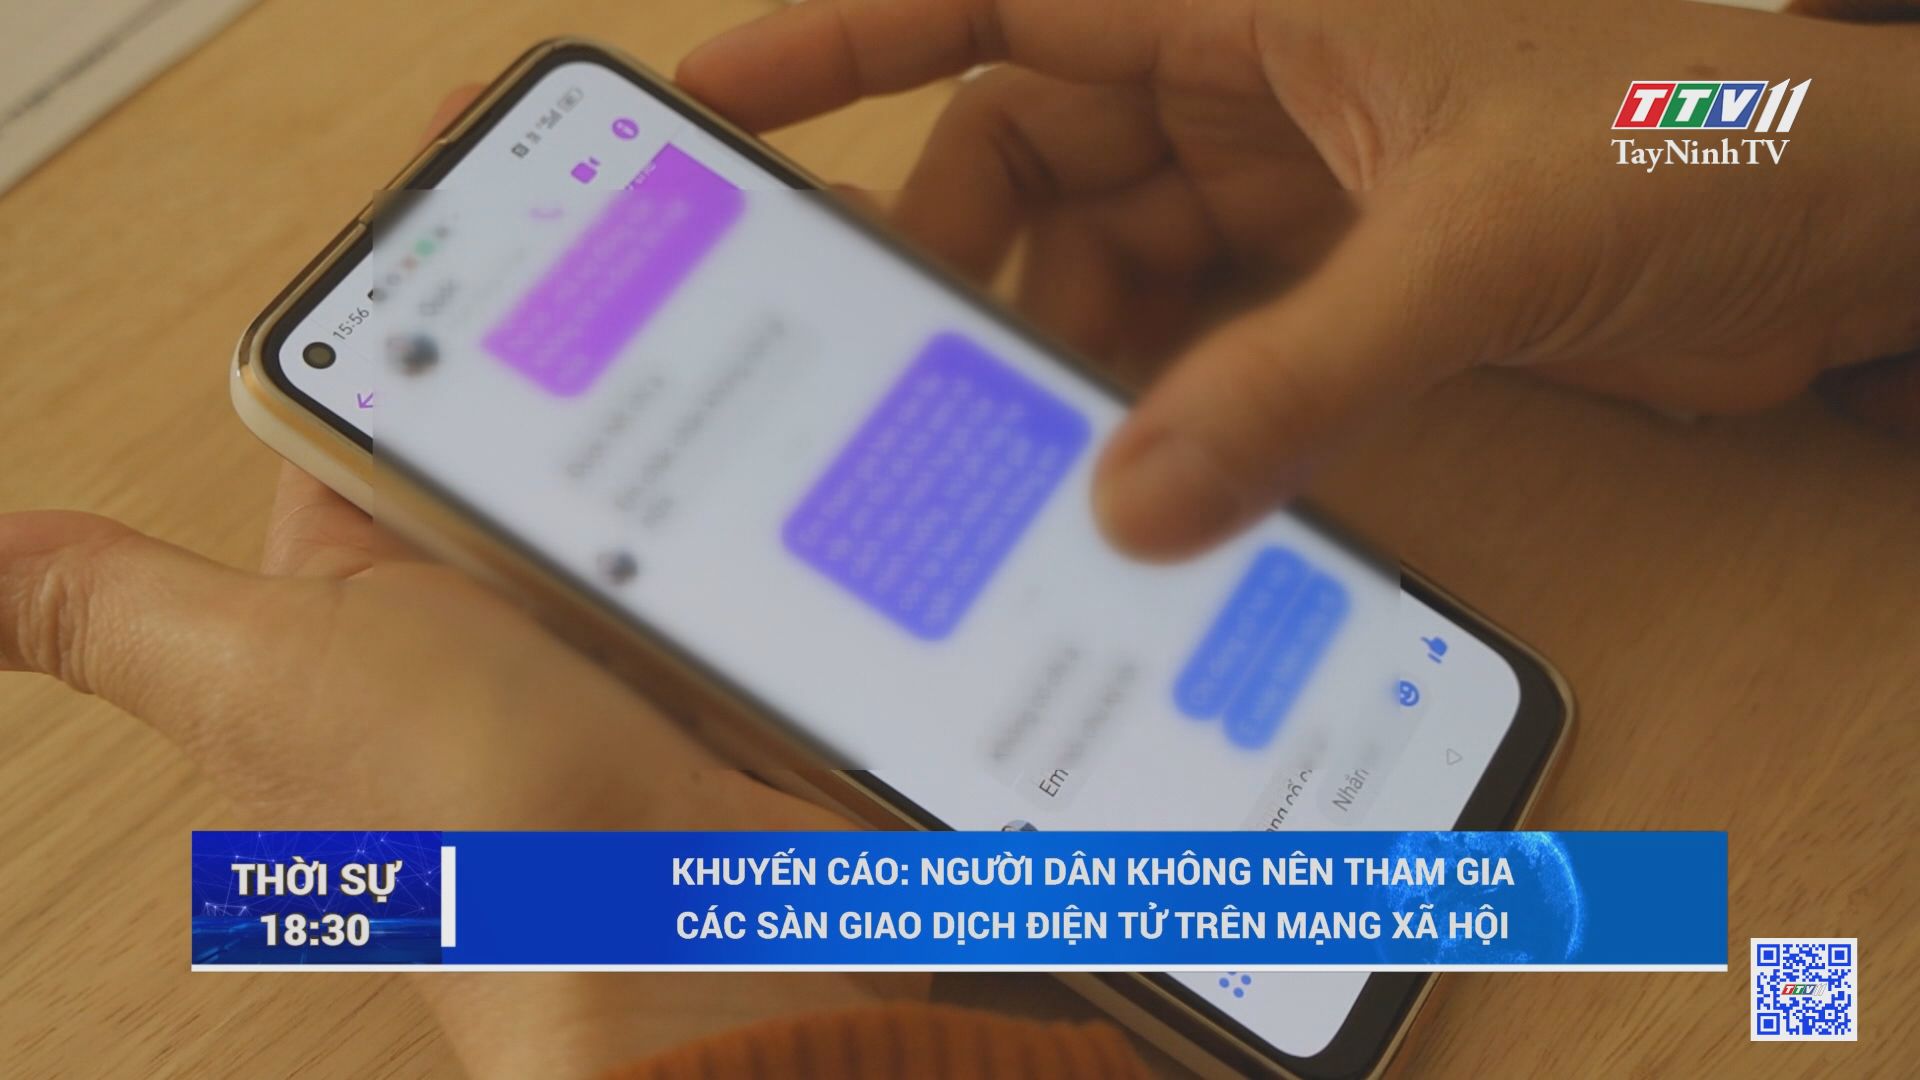 Khuyến cáo: Người dân không nên tham gia các sàn giao dịch điện tử trên mạng xã hội | TayNinhTV